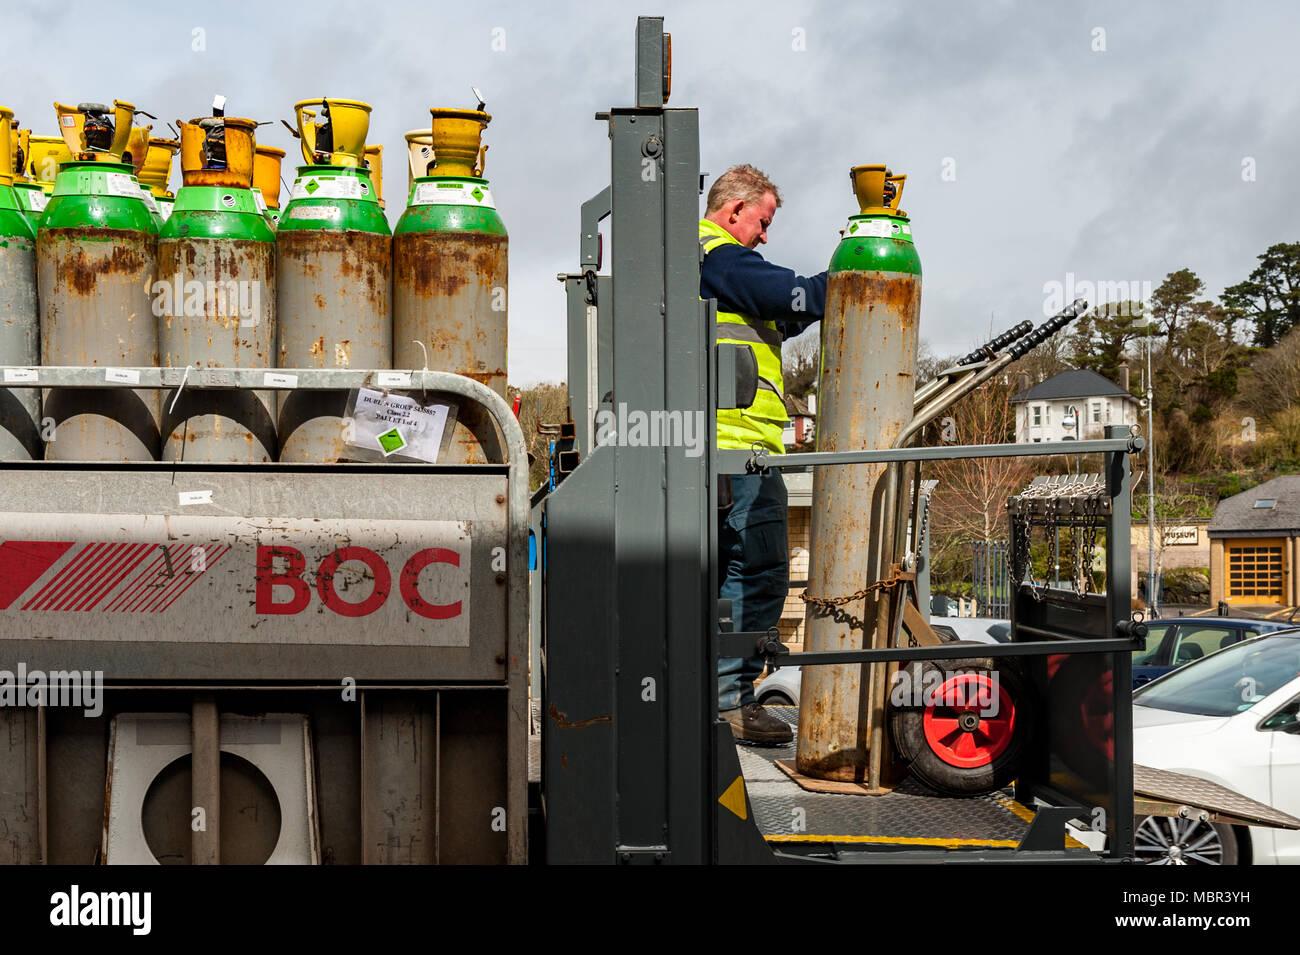 BOC Mitarbeiter liefert einen vollen Gasflasche/Zylinder eine Kneipe in Bantry Stadtplatz, Bantry, West Cork, Irland mit kopieren. Stockfoto